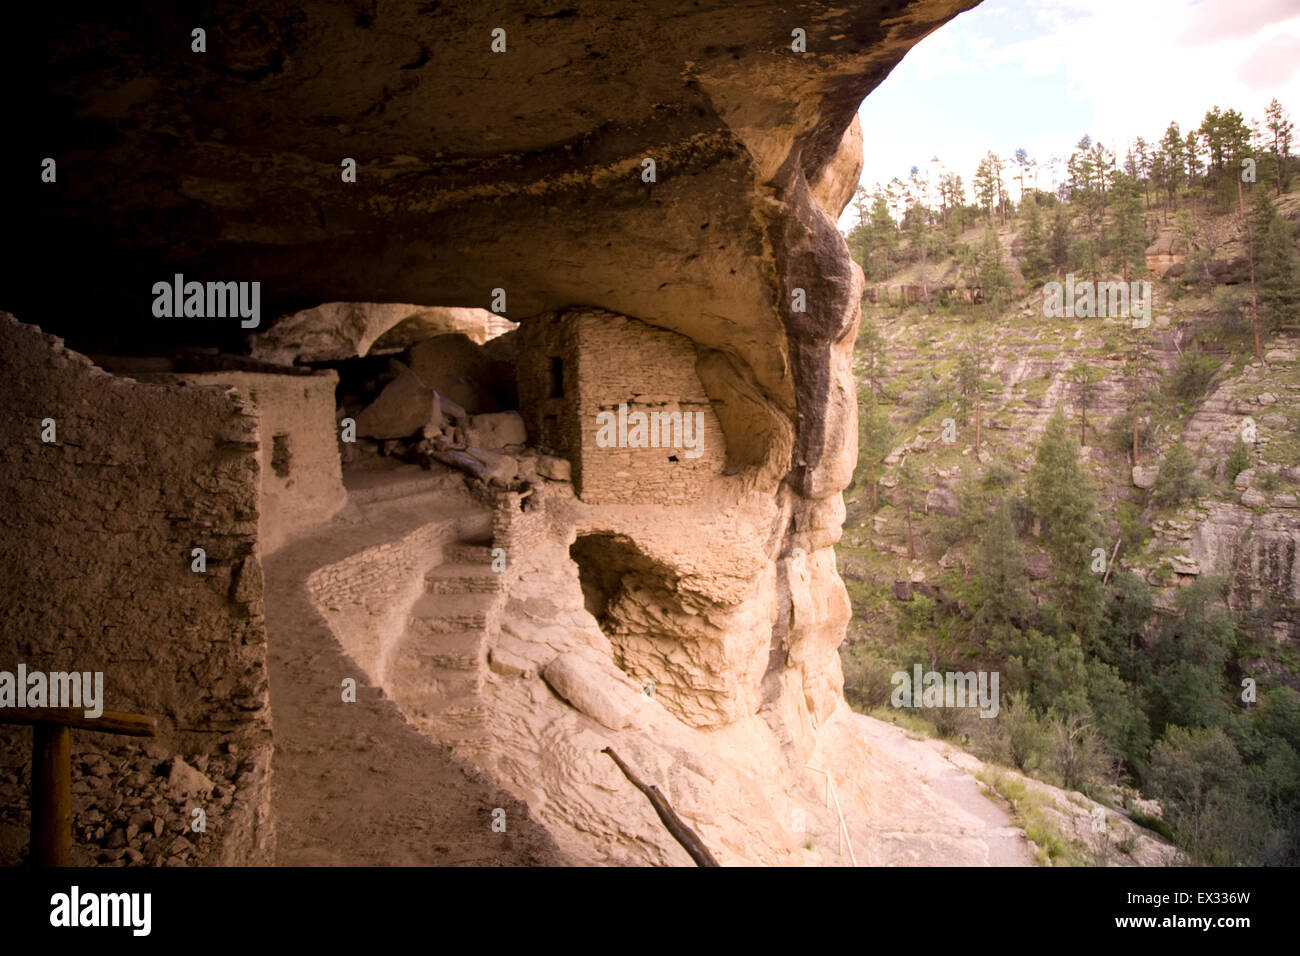 Gila Cliff dwellings National Monument préserve les structures en pierre et mortier construit dans des cavernes naturelles par la culture Mogollon. Banque D'Images